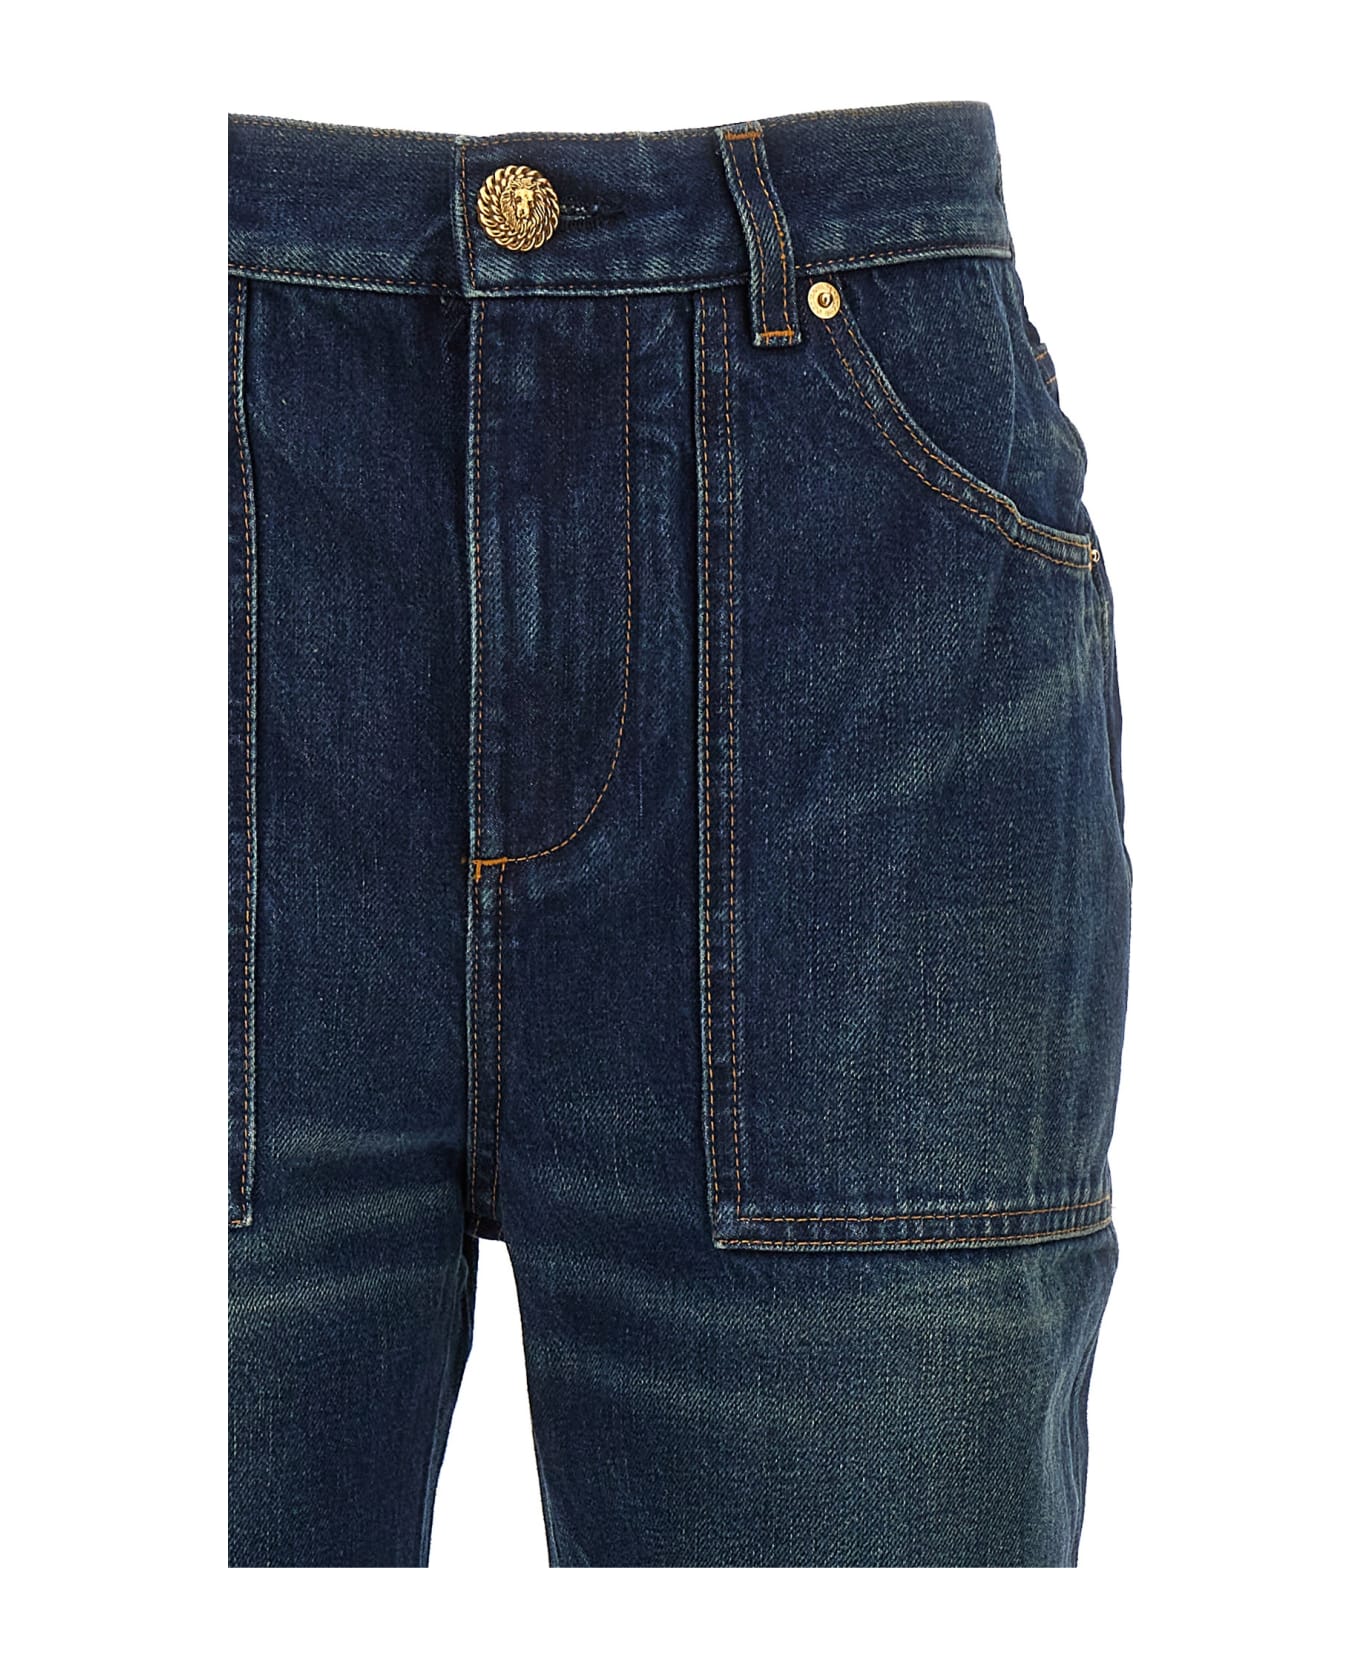 Balmain Vintage Bootcut Jeans - Bleu jean brut